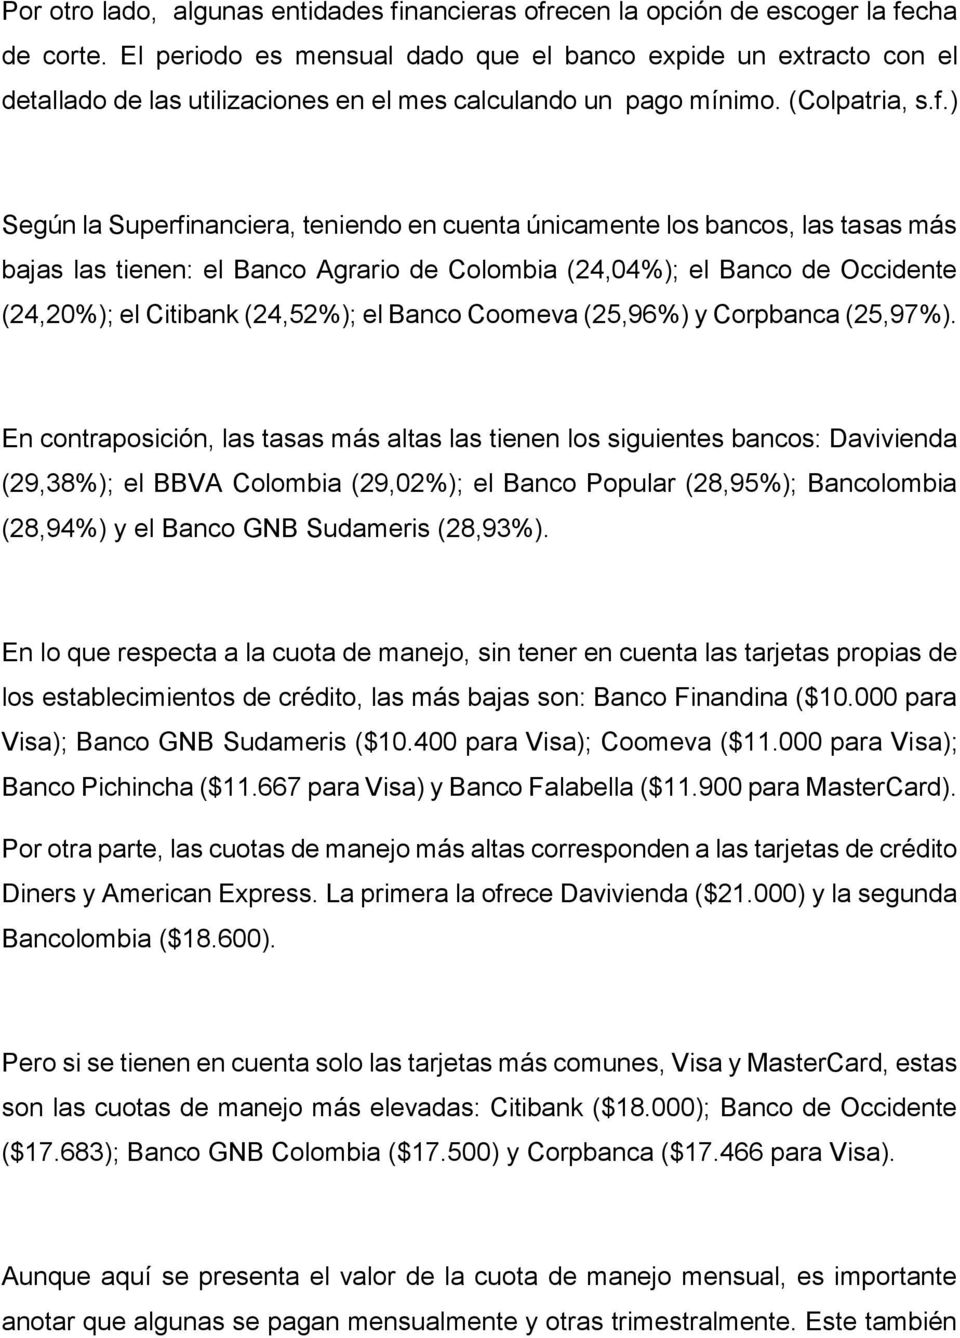 ) Según la Superfinanciera, teniendo en cuenta únicamente los bancos, las tasas más bajas las tienen: el Banco Agrario de Colombia (24,04%); el Banco de Occidente (24,20%); el Citibank (24,52%); el